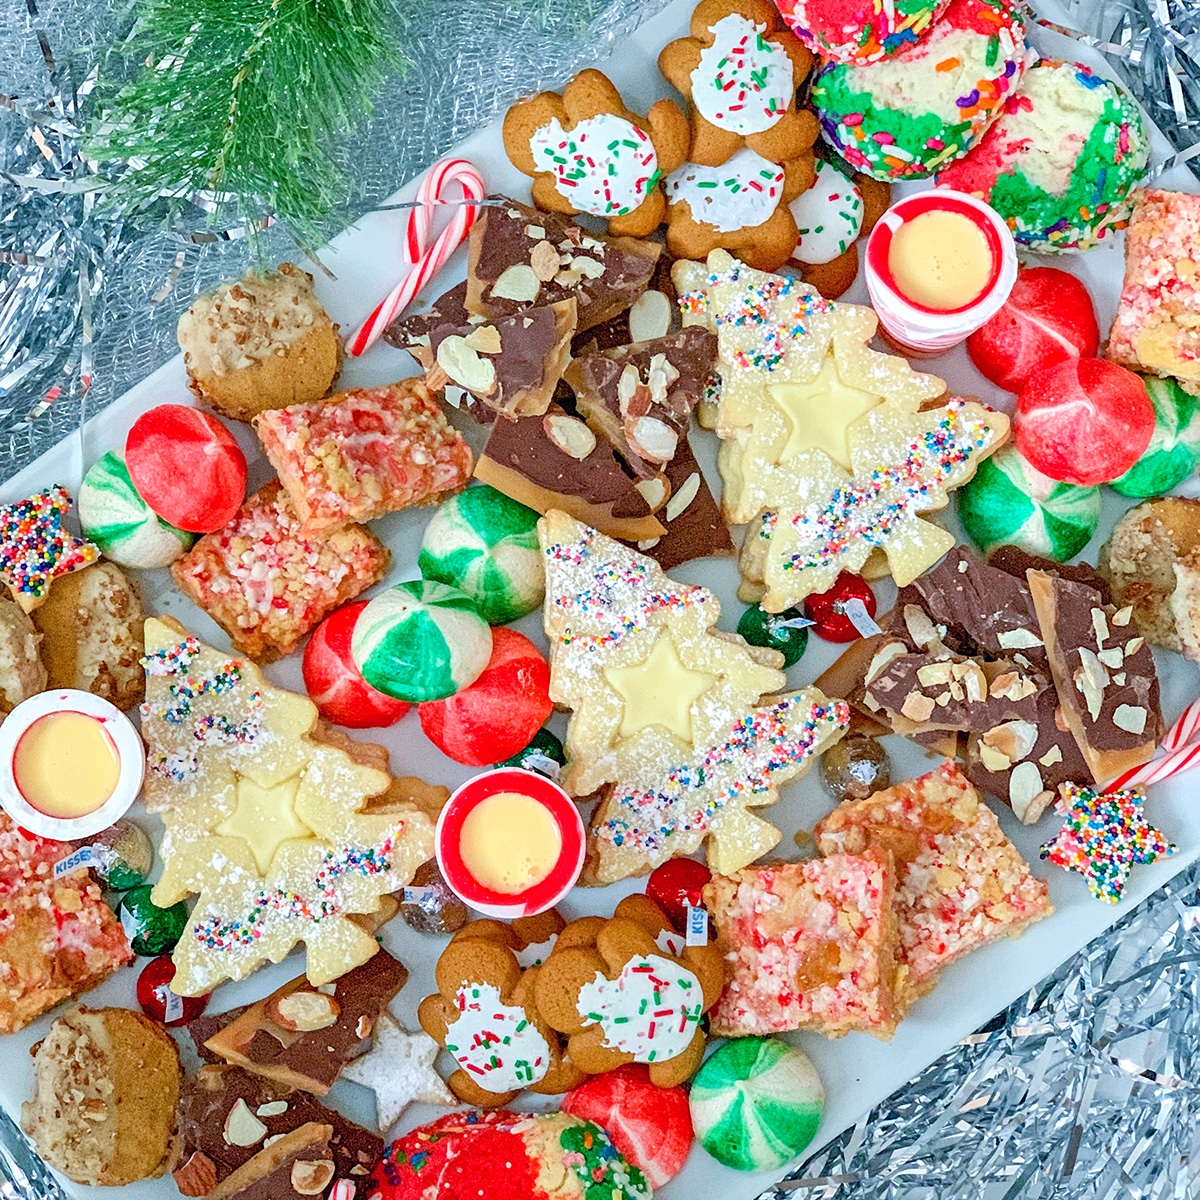 https://wearenotmartha.com/wp-content/uploads/Holiday-Cookie-Platter-Featured.jpg